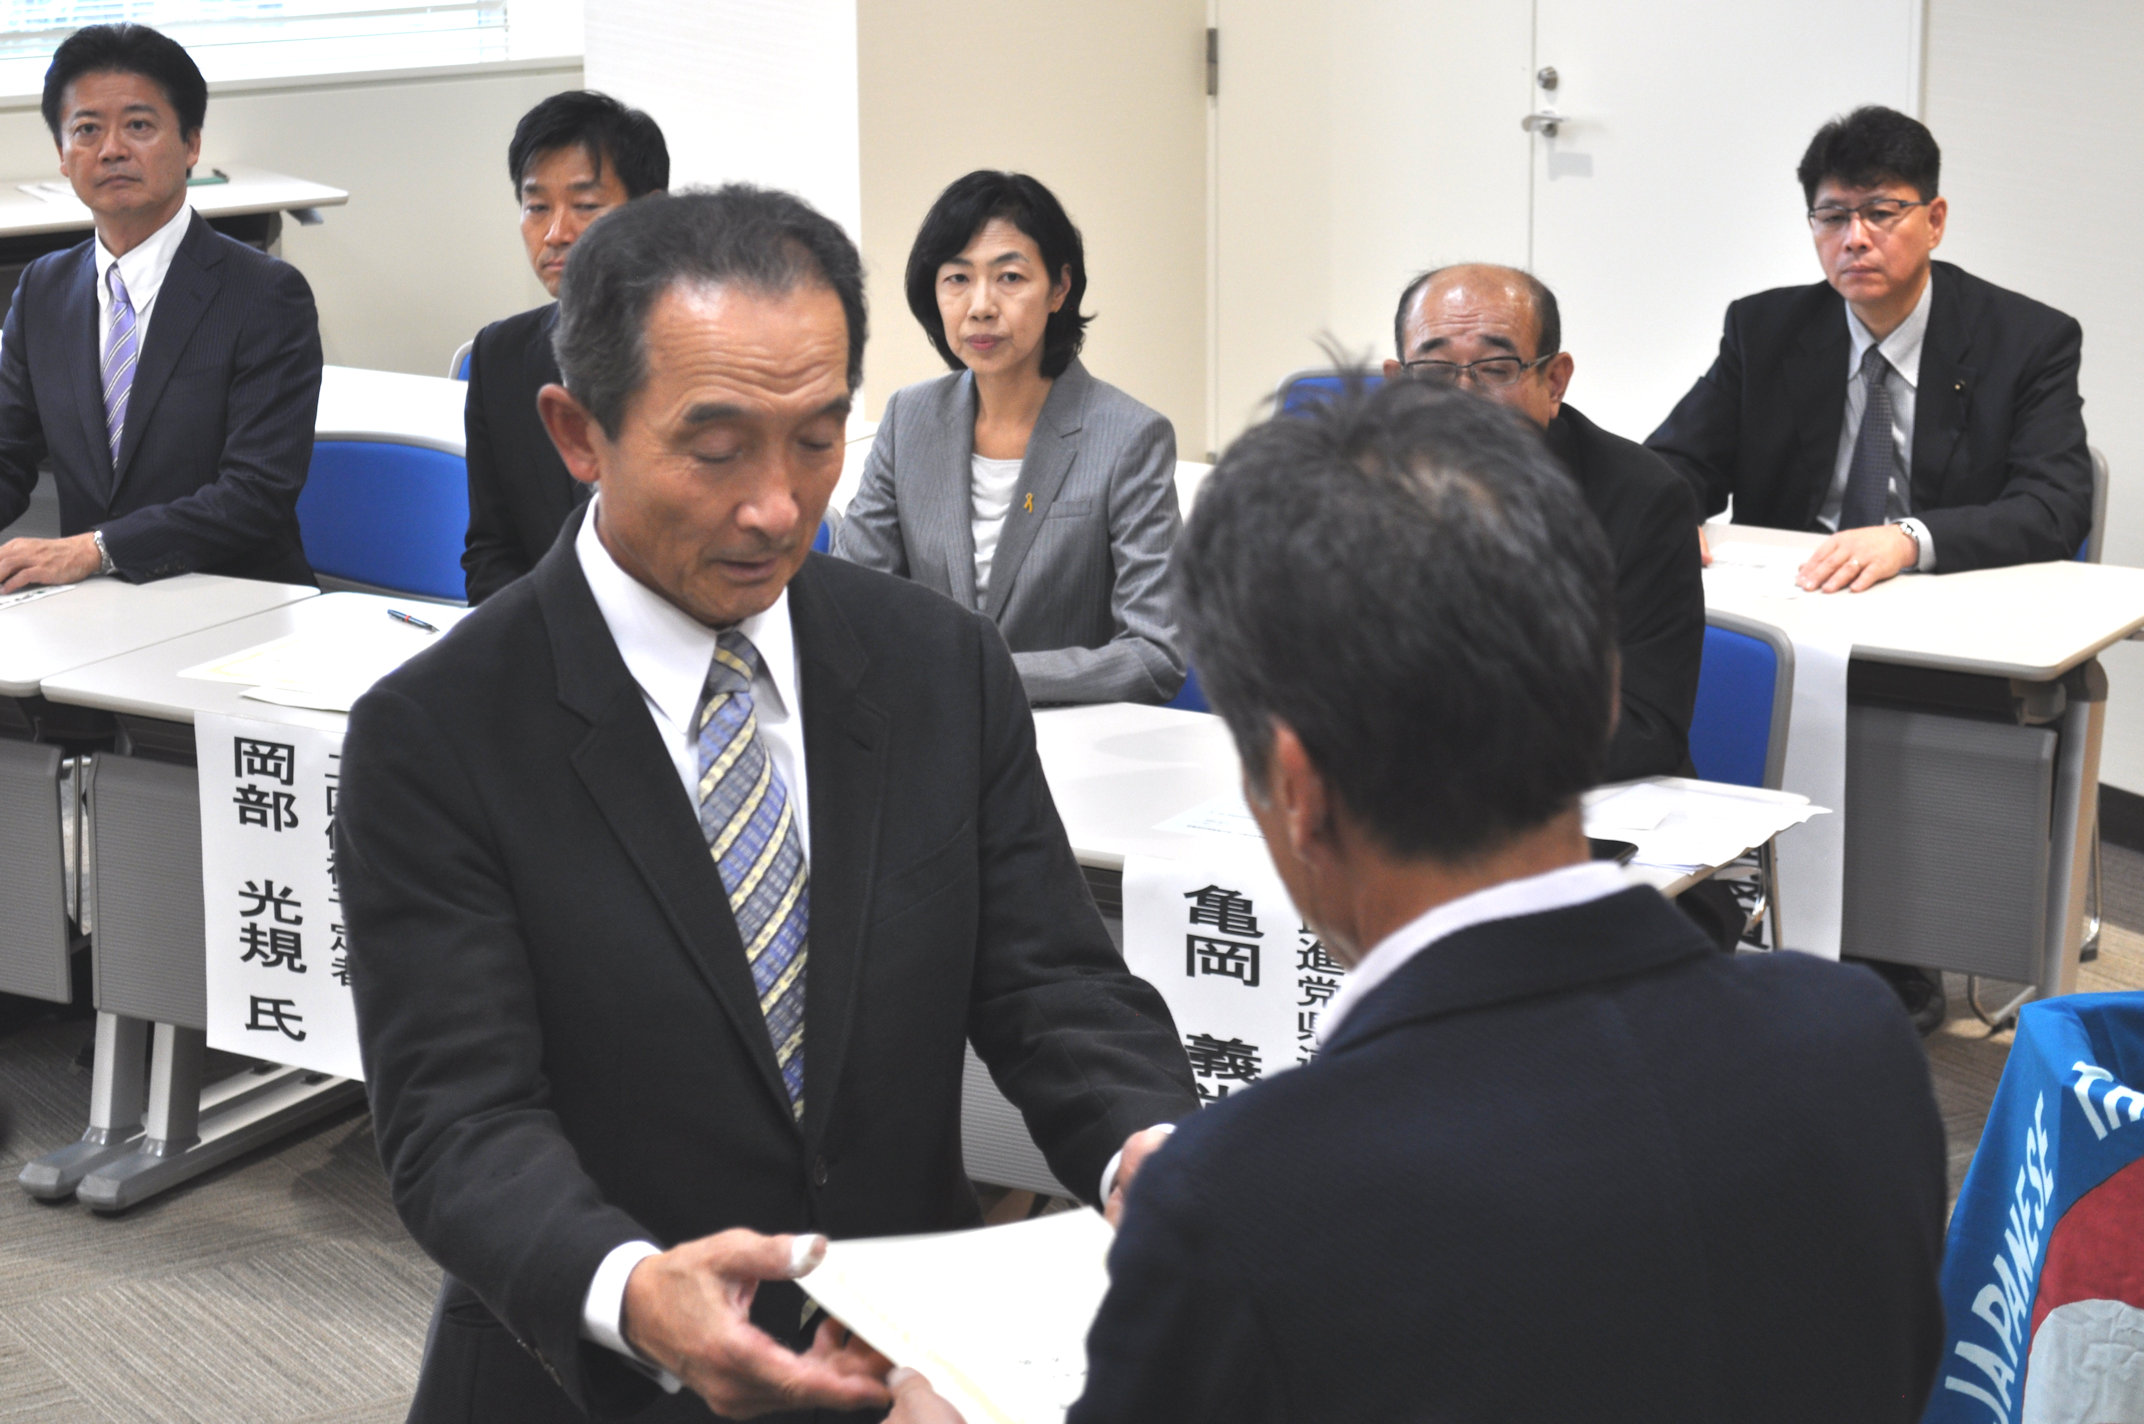 連合福島今泉会長から「推薦状」を手交された吉田泉予定候補者